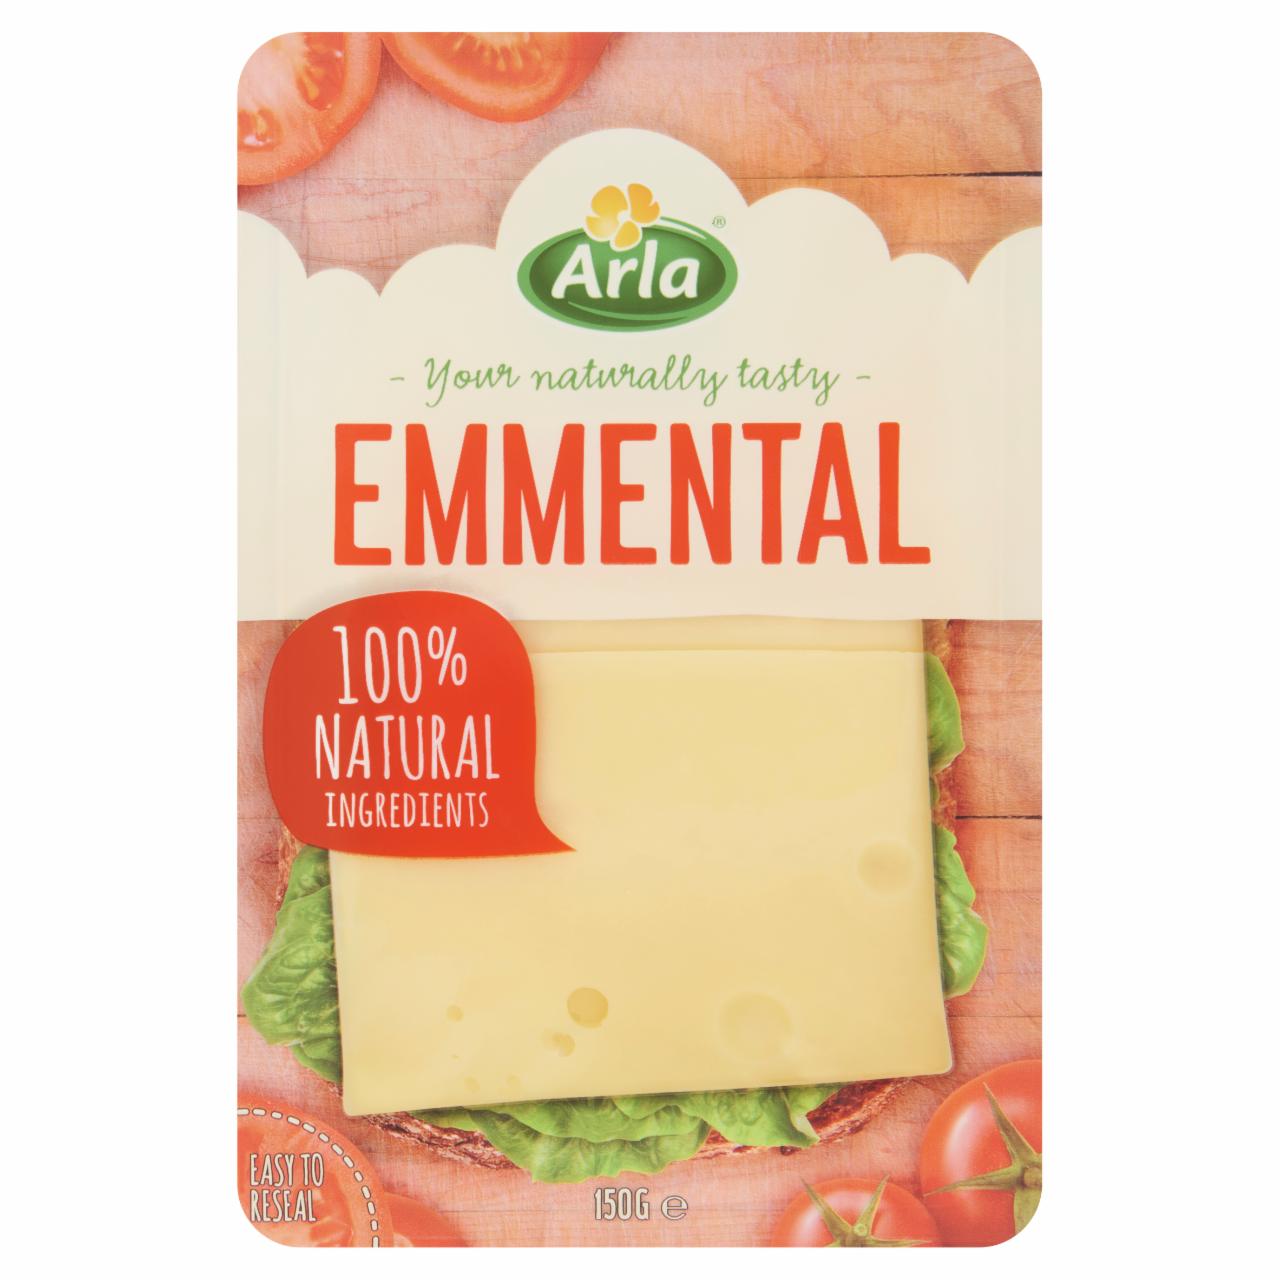 Képek - Arla szeletelt, ementáli típusú zsíros, kemény sajt 150 g